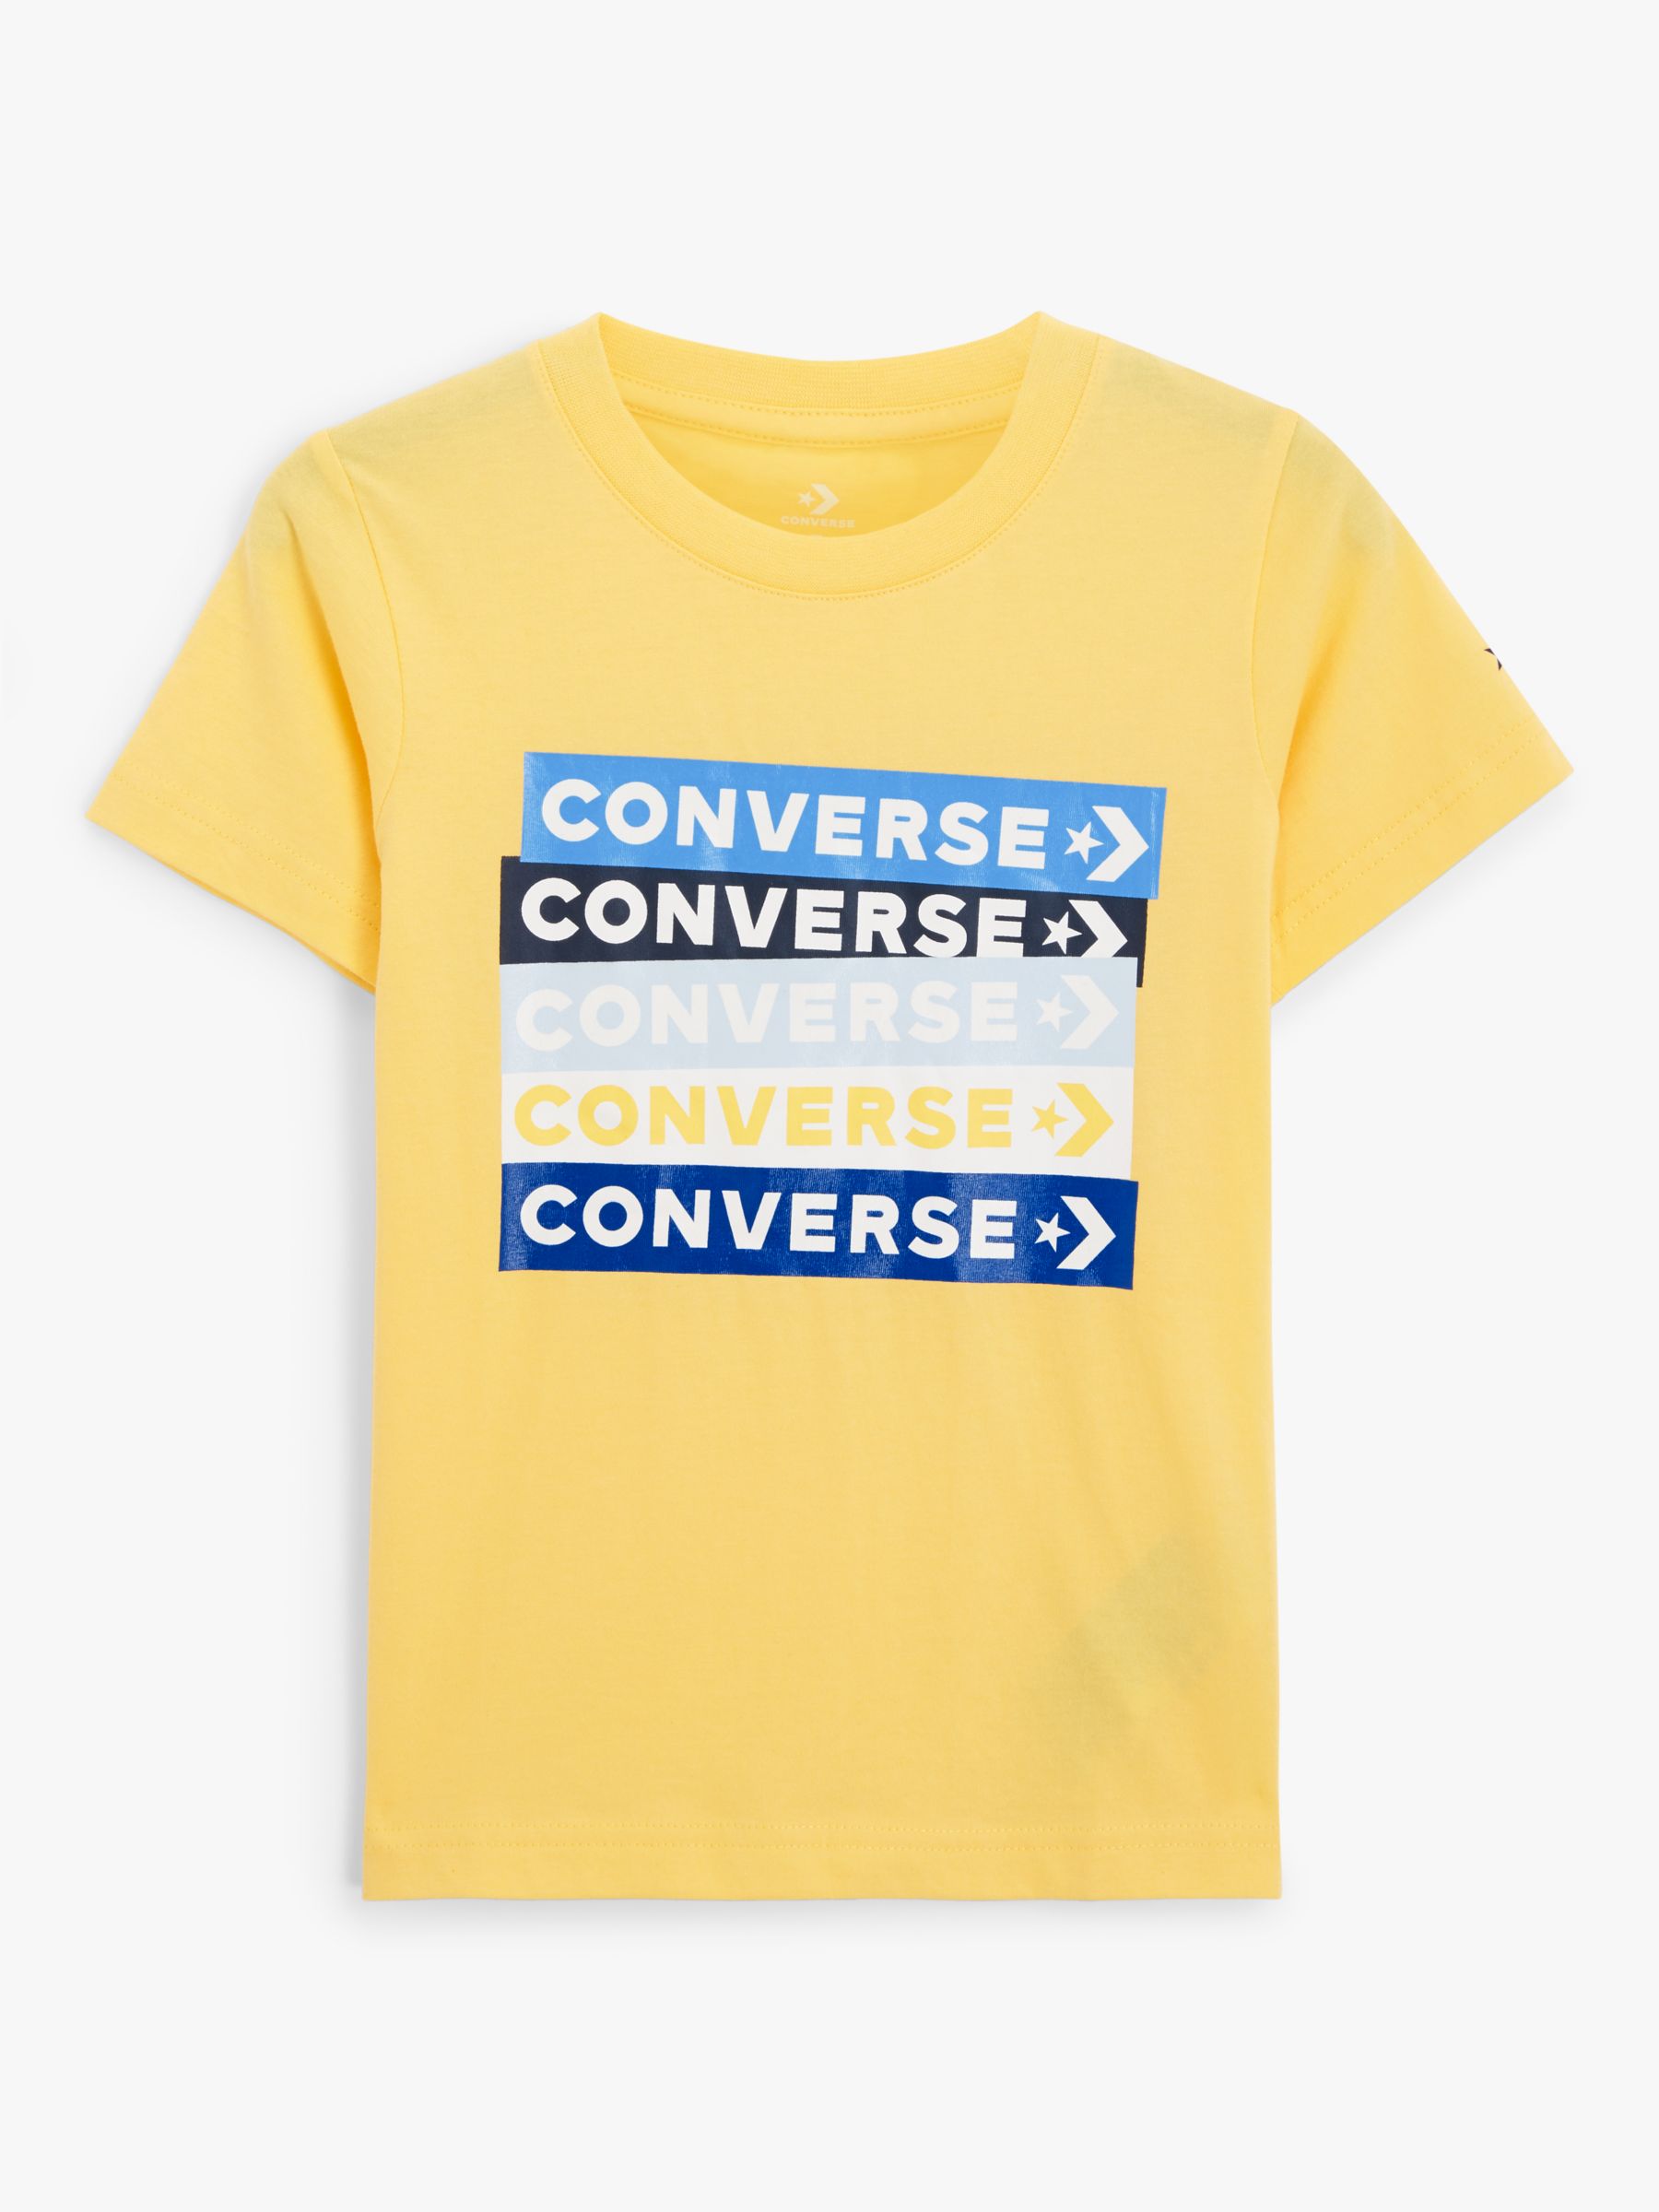 converse online t shirt